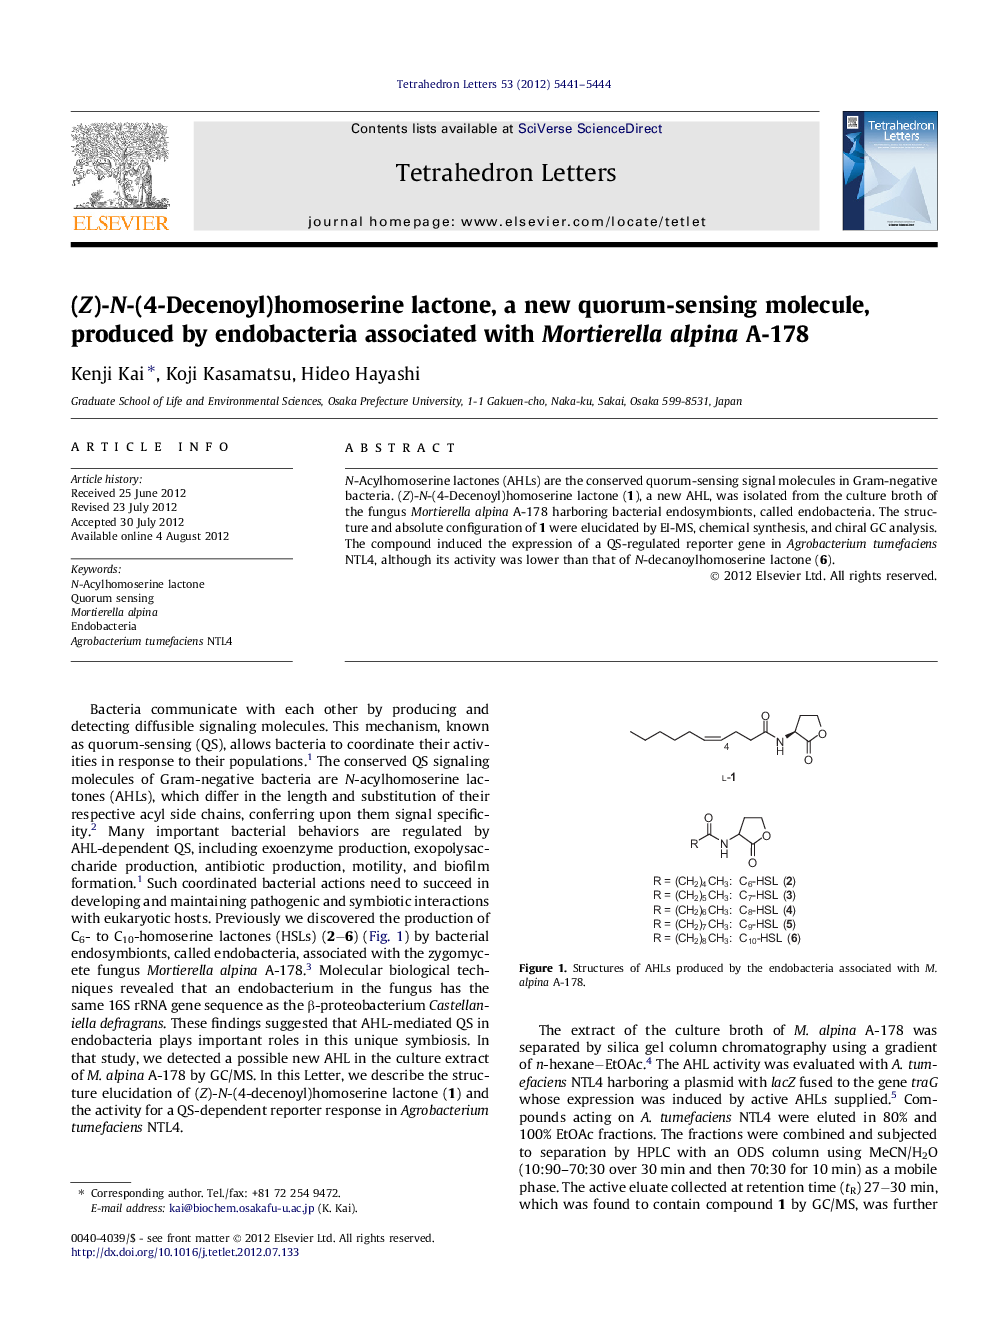 (Z)-N-(4-Decenoyl)homoserine lactone, a new quorum-sensing molecule, produced by endobacteria associated with Mortierella alpina A-178